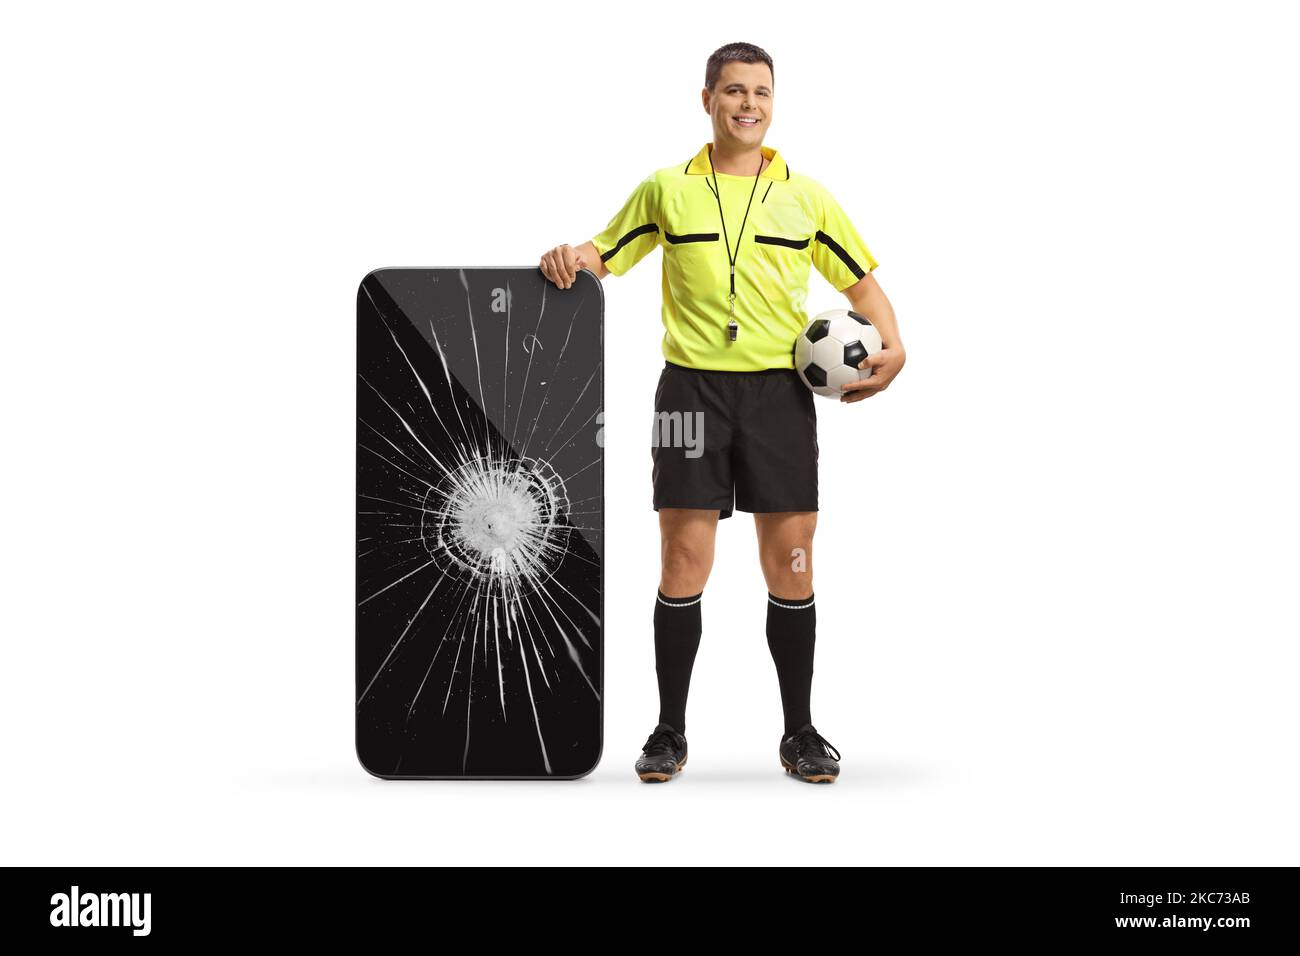 Portrait complet d'un arbitre de football debout à côté d'un smartphone avec écran cassé isolé sur fond blanc Banque D'Images